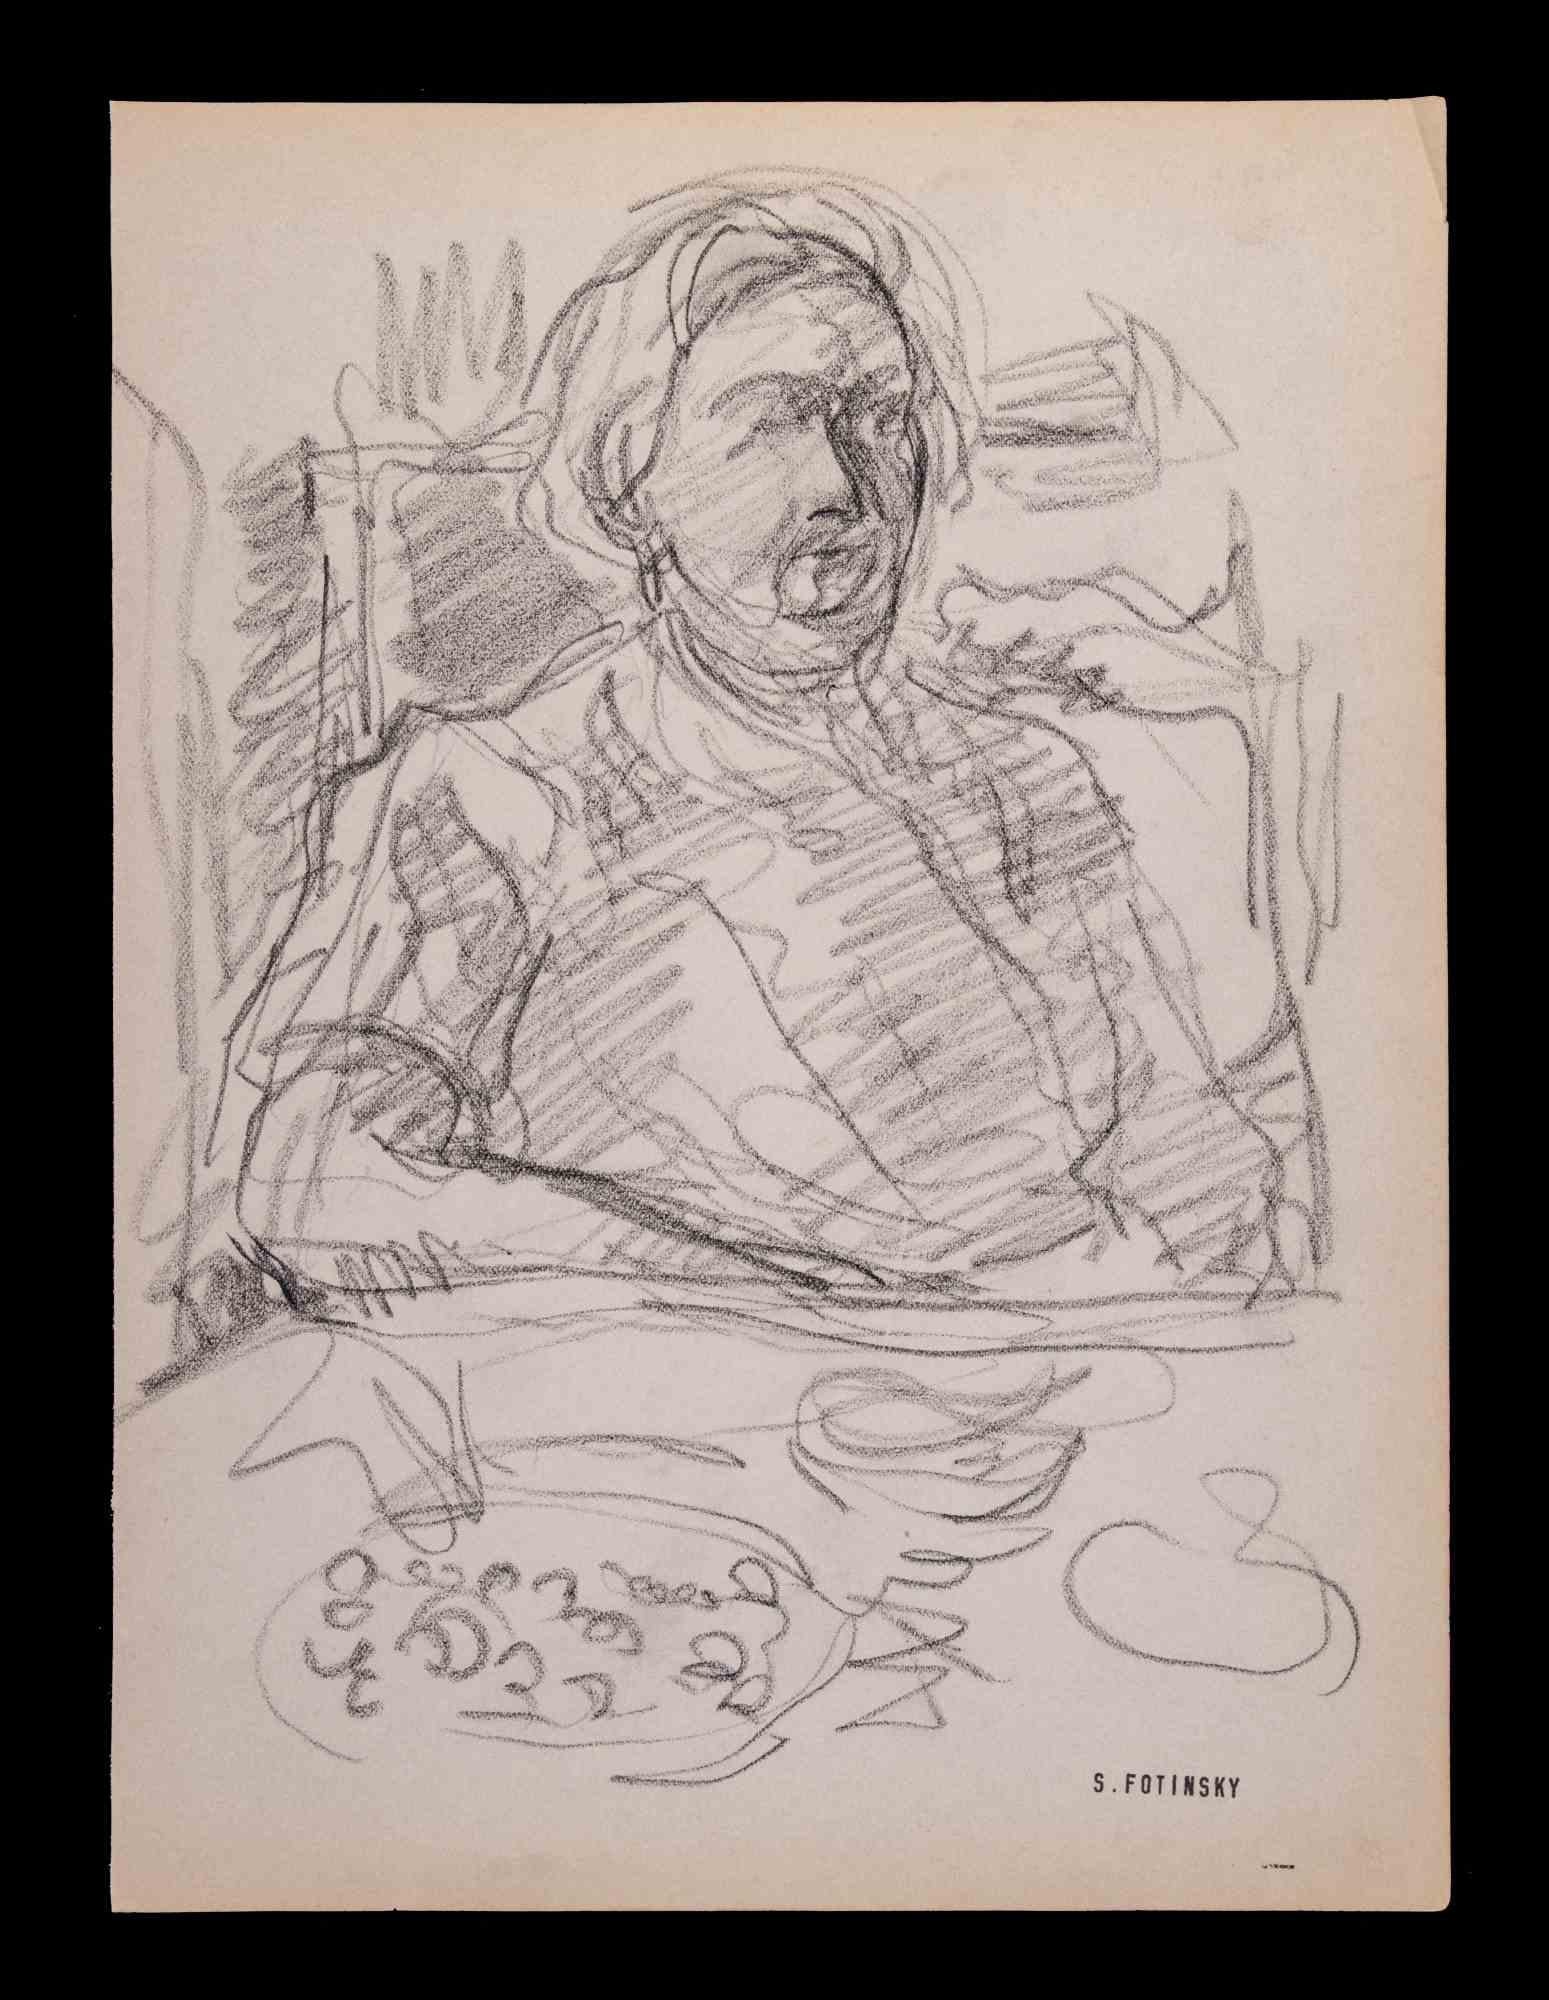 Portrait ist ein Kunstwerk von Serge Fotinsky (1887-1971).

Zeichnung mit Bleistift, 1947. 

27 x 20 cm.

Guter Zustand mit Ausnahme einiger zeitbedingter Vergilbungen. 